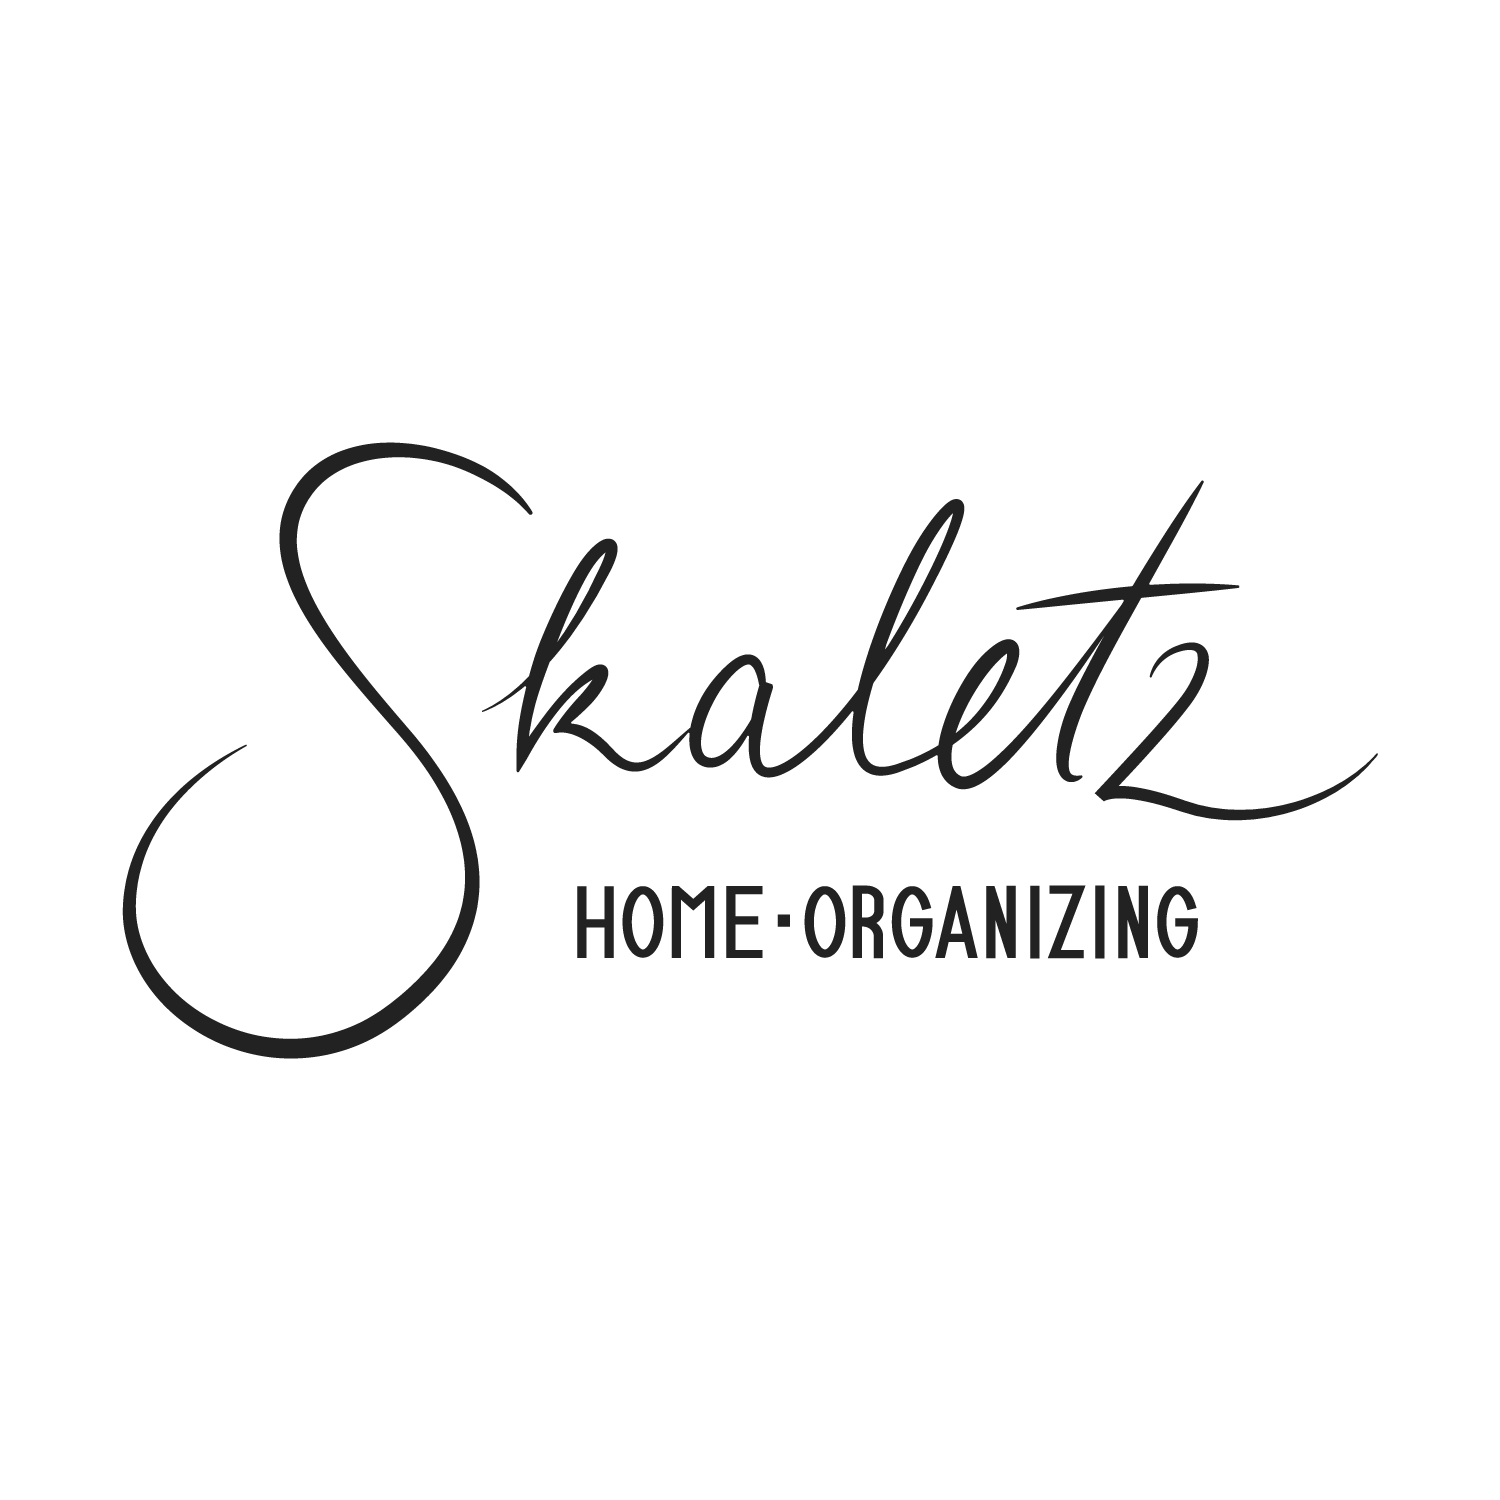 Skaletz Home Organizing